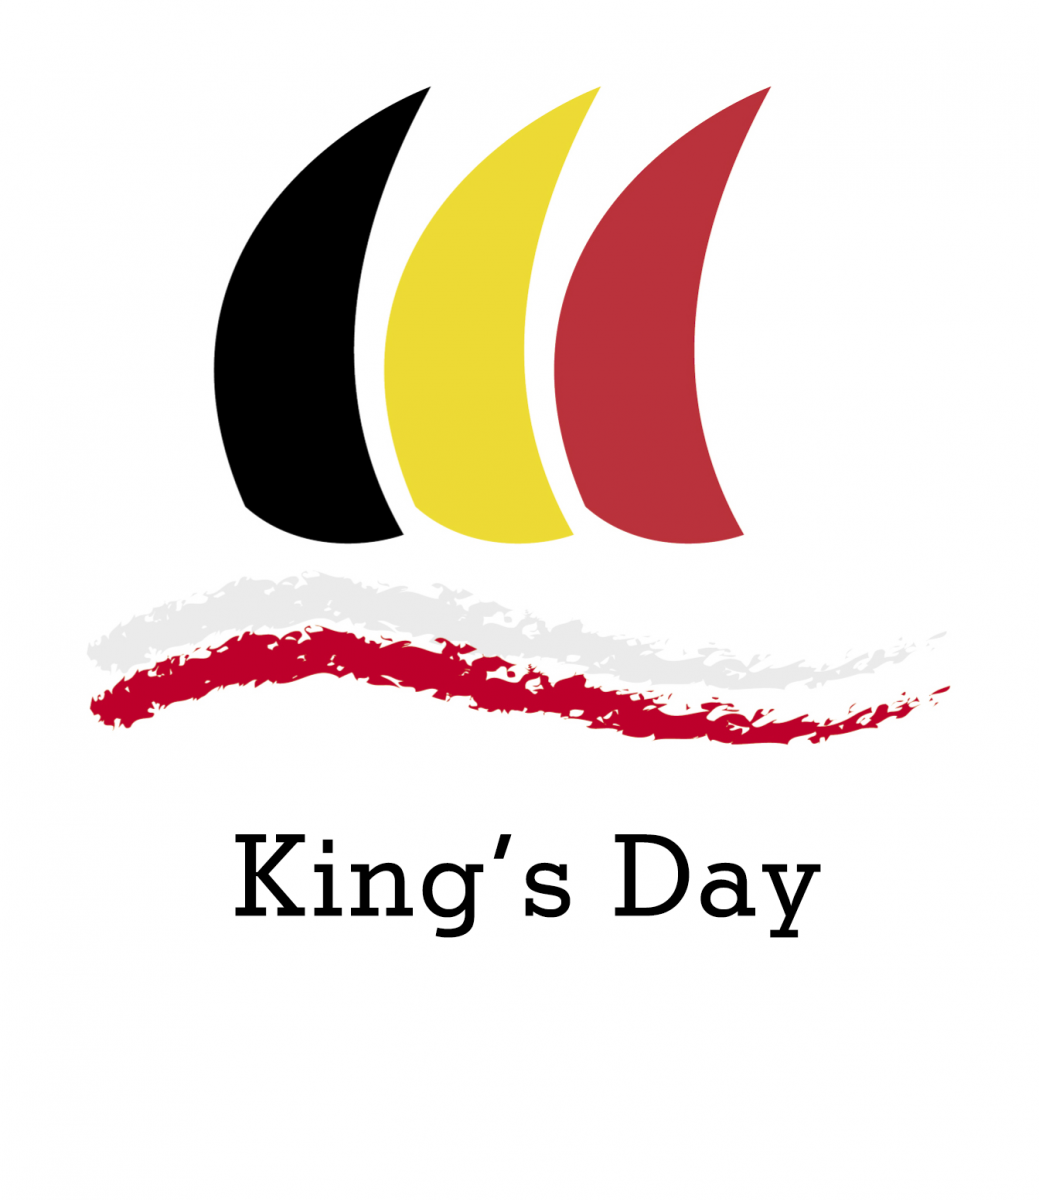 BELGIAN DAYS 2019: King's Day